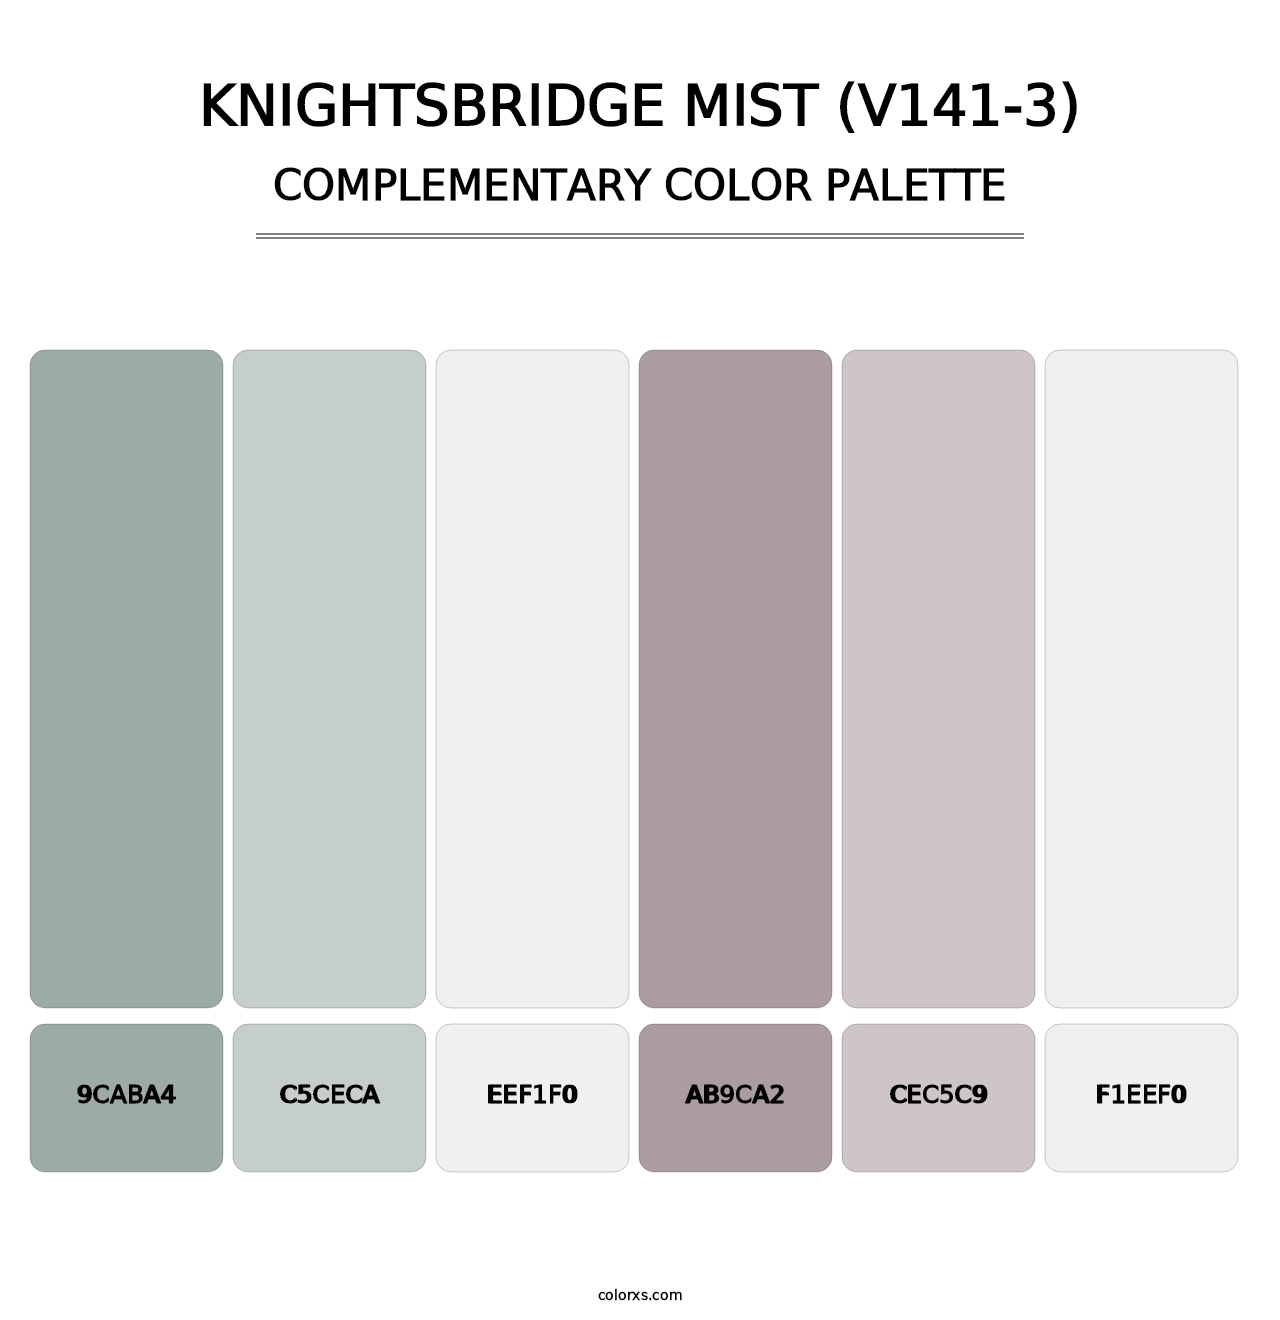 Knightsbridge Mist (V141-3) - Complementary Color Palette